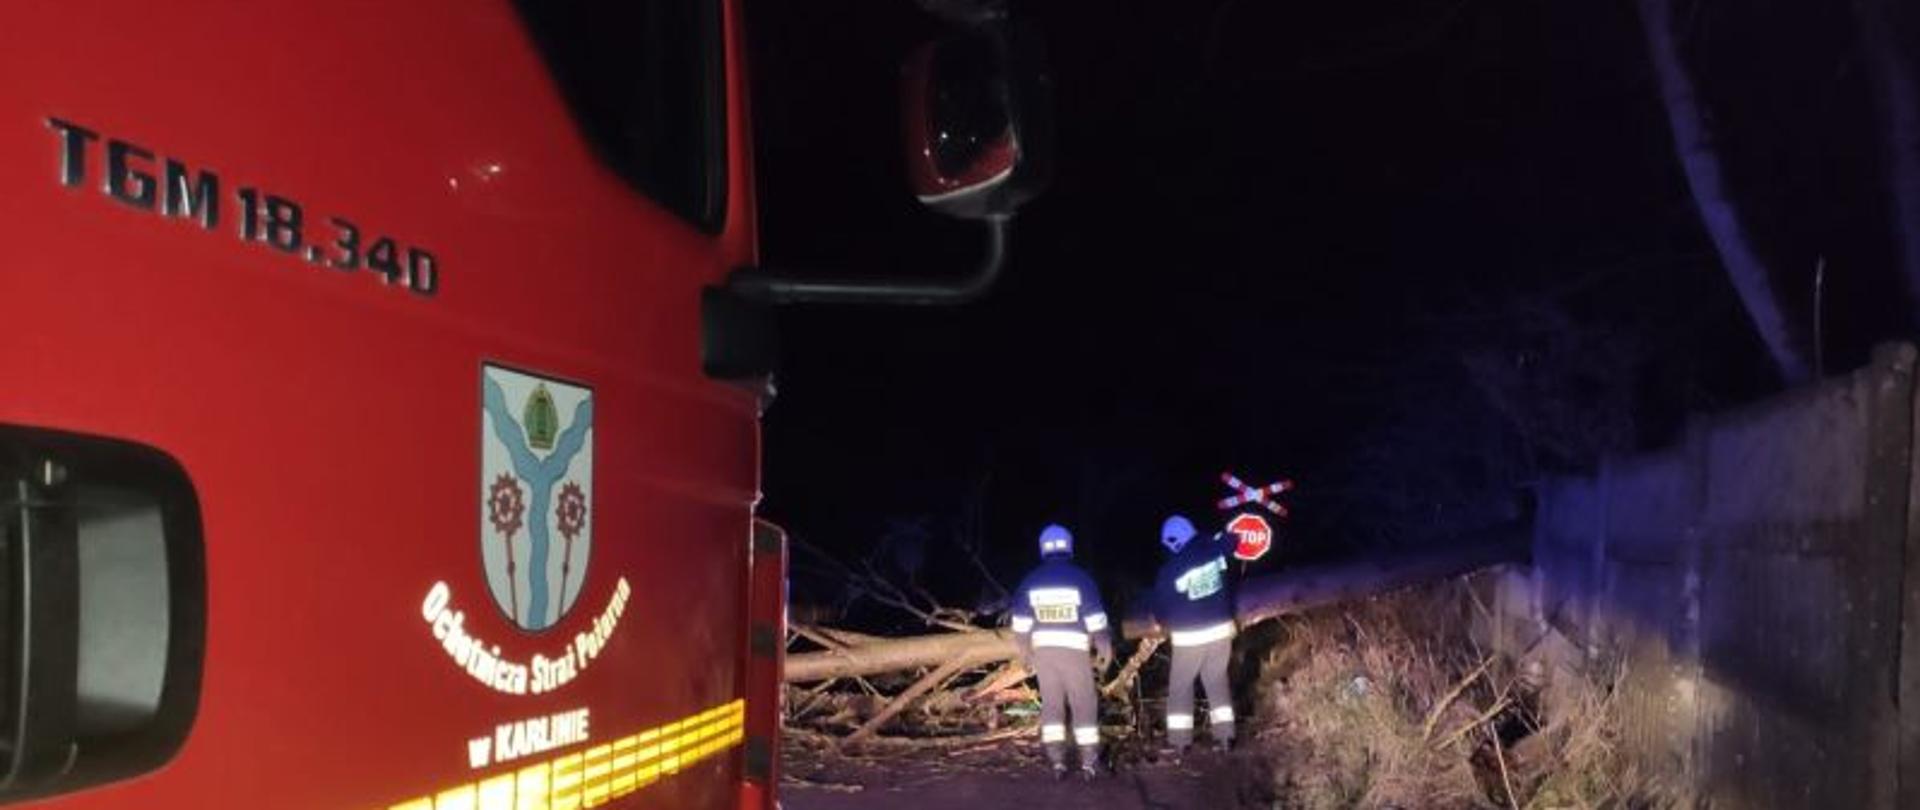 Zdjęcie wykonane w nocy. Po lewej stronie zdjęcia widoczny czerwony bok pojazdu gaśniczego. Na drzwiach widnieje logo OSP Karlino. W oddali, oświetleni żółtym światłem pojazdu strażacy. Strażacy w białych hełmach pracują przy leżącym na jezdni drzewie